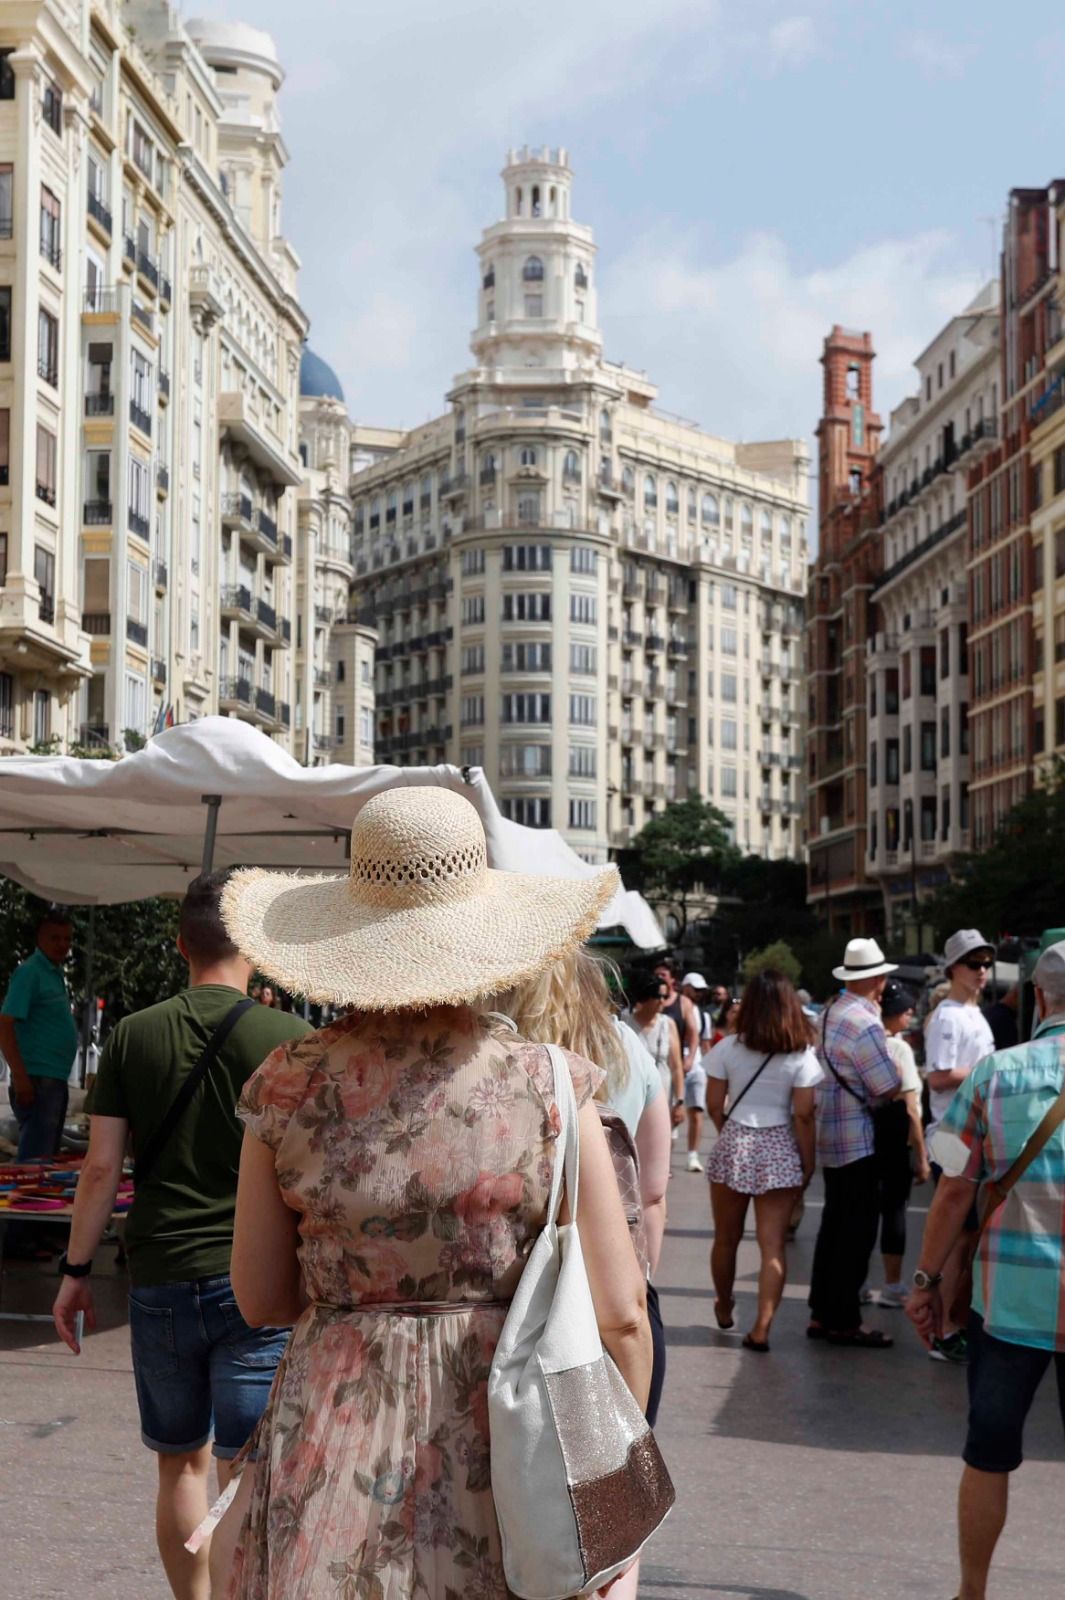 Las altas temperaturas no impiden el turismo en el centro de València